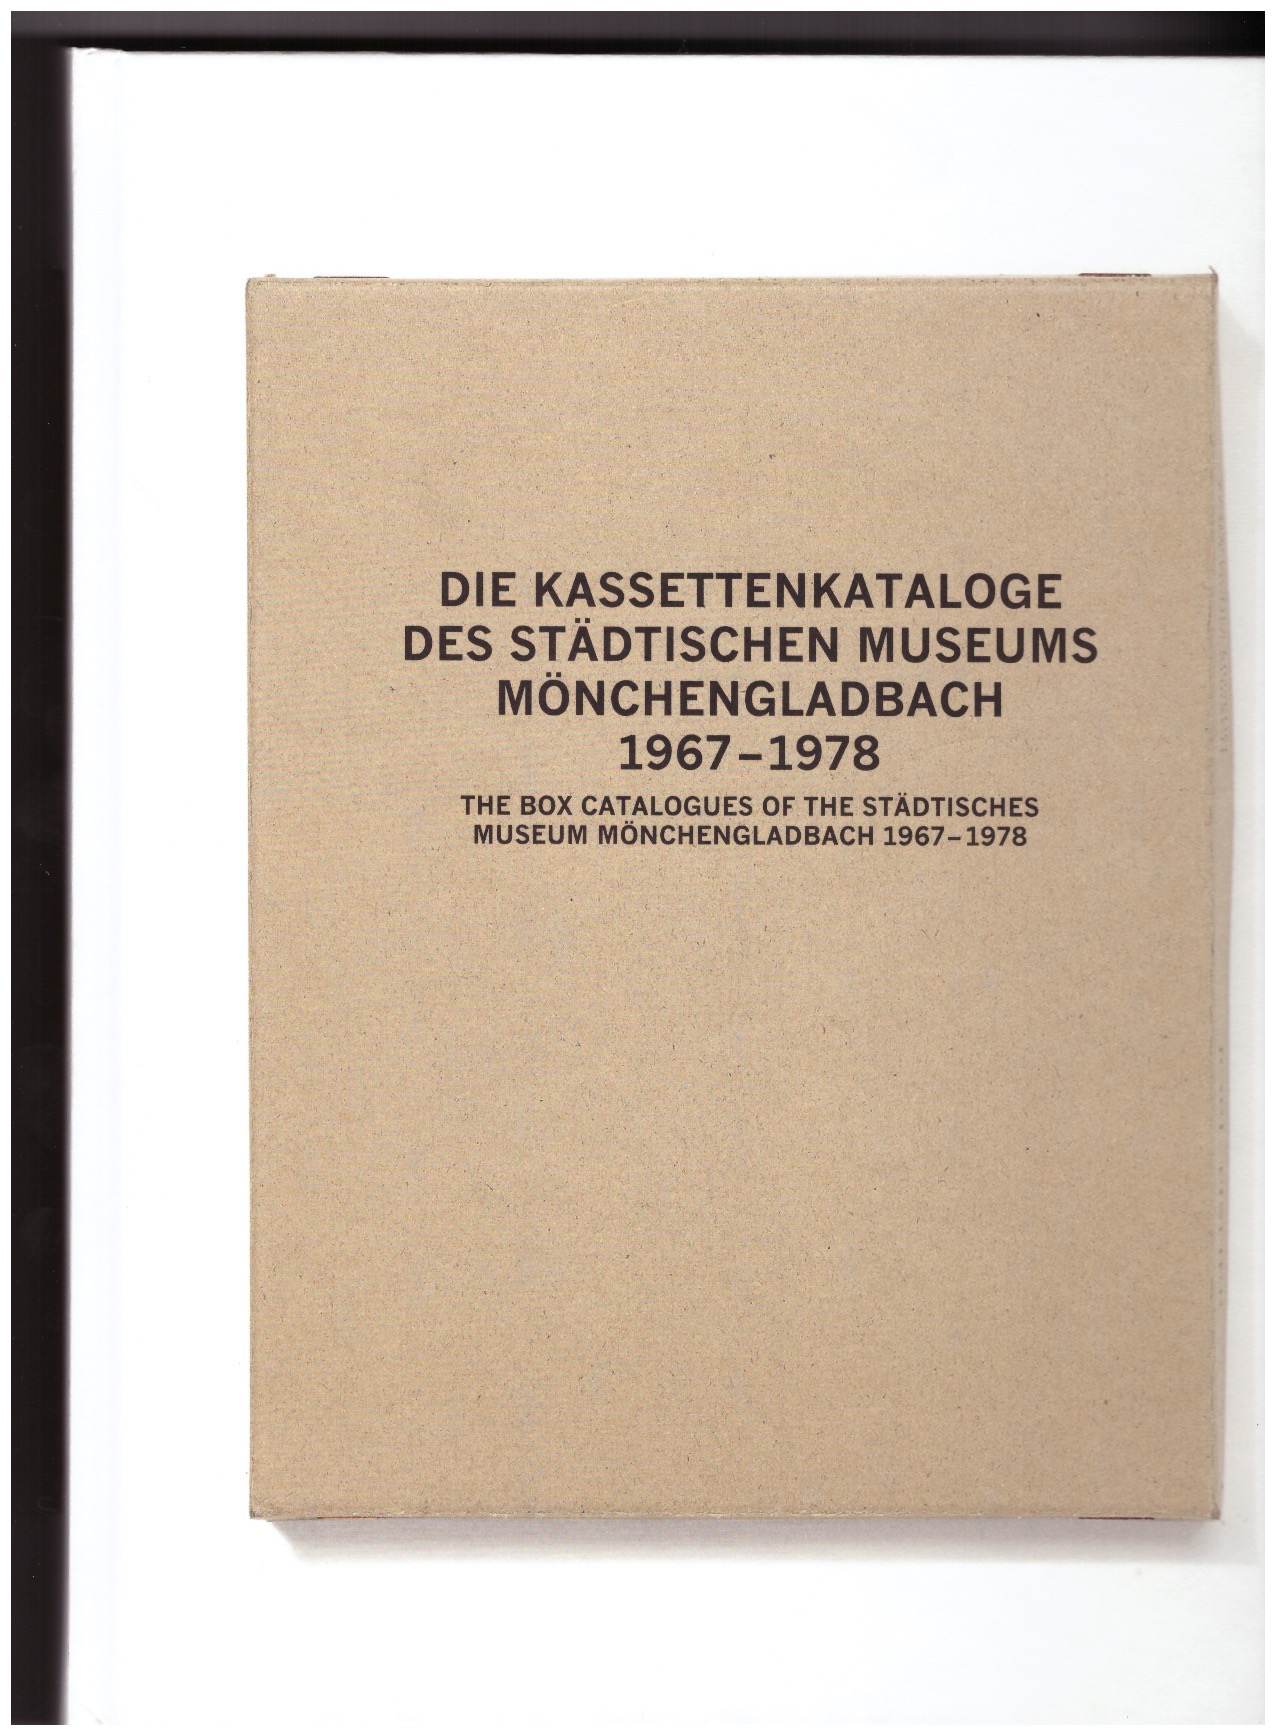 RENNERT, Susanne; TITZ, Susanne - The Box Catalogues of the Städtisches Museum Mönchengladbach 1967-78